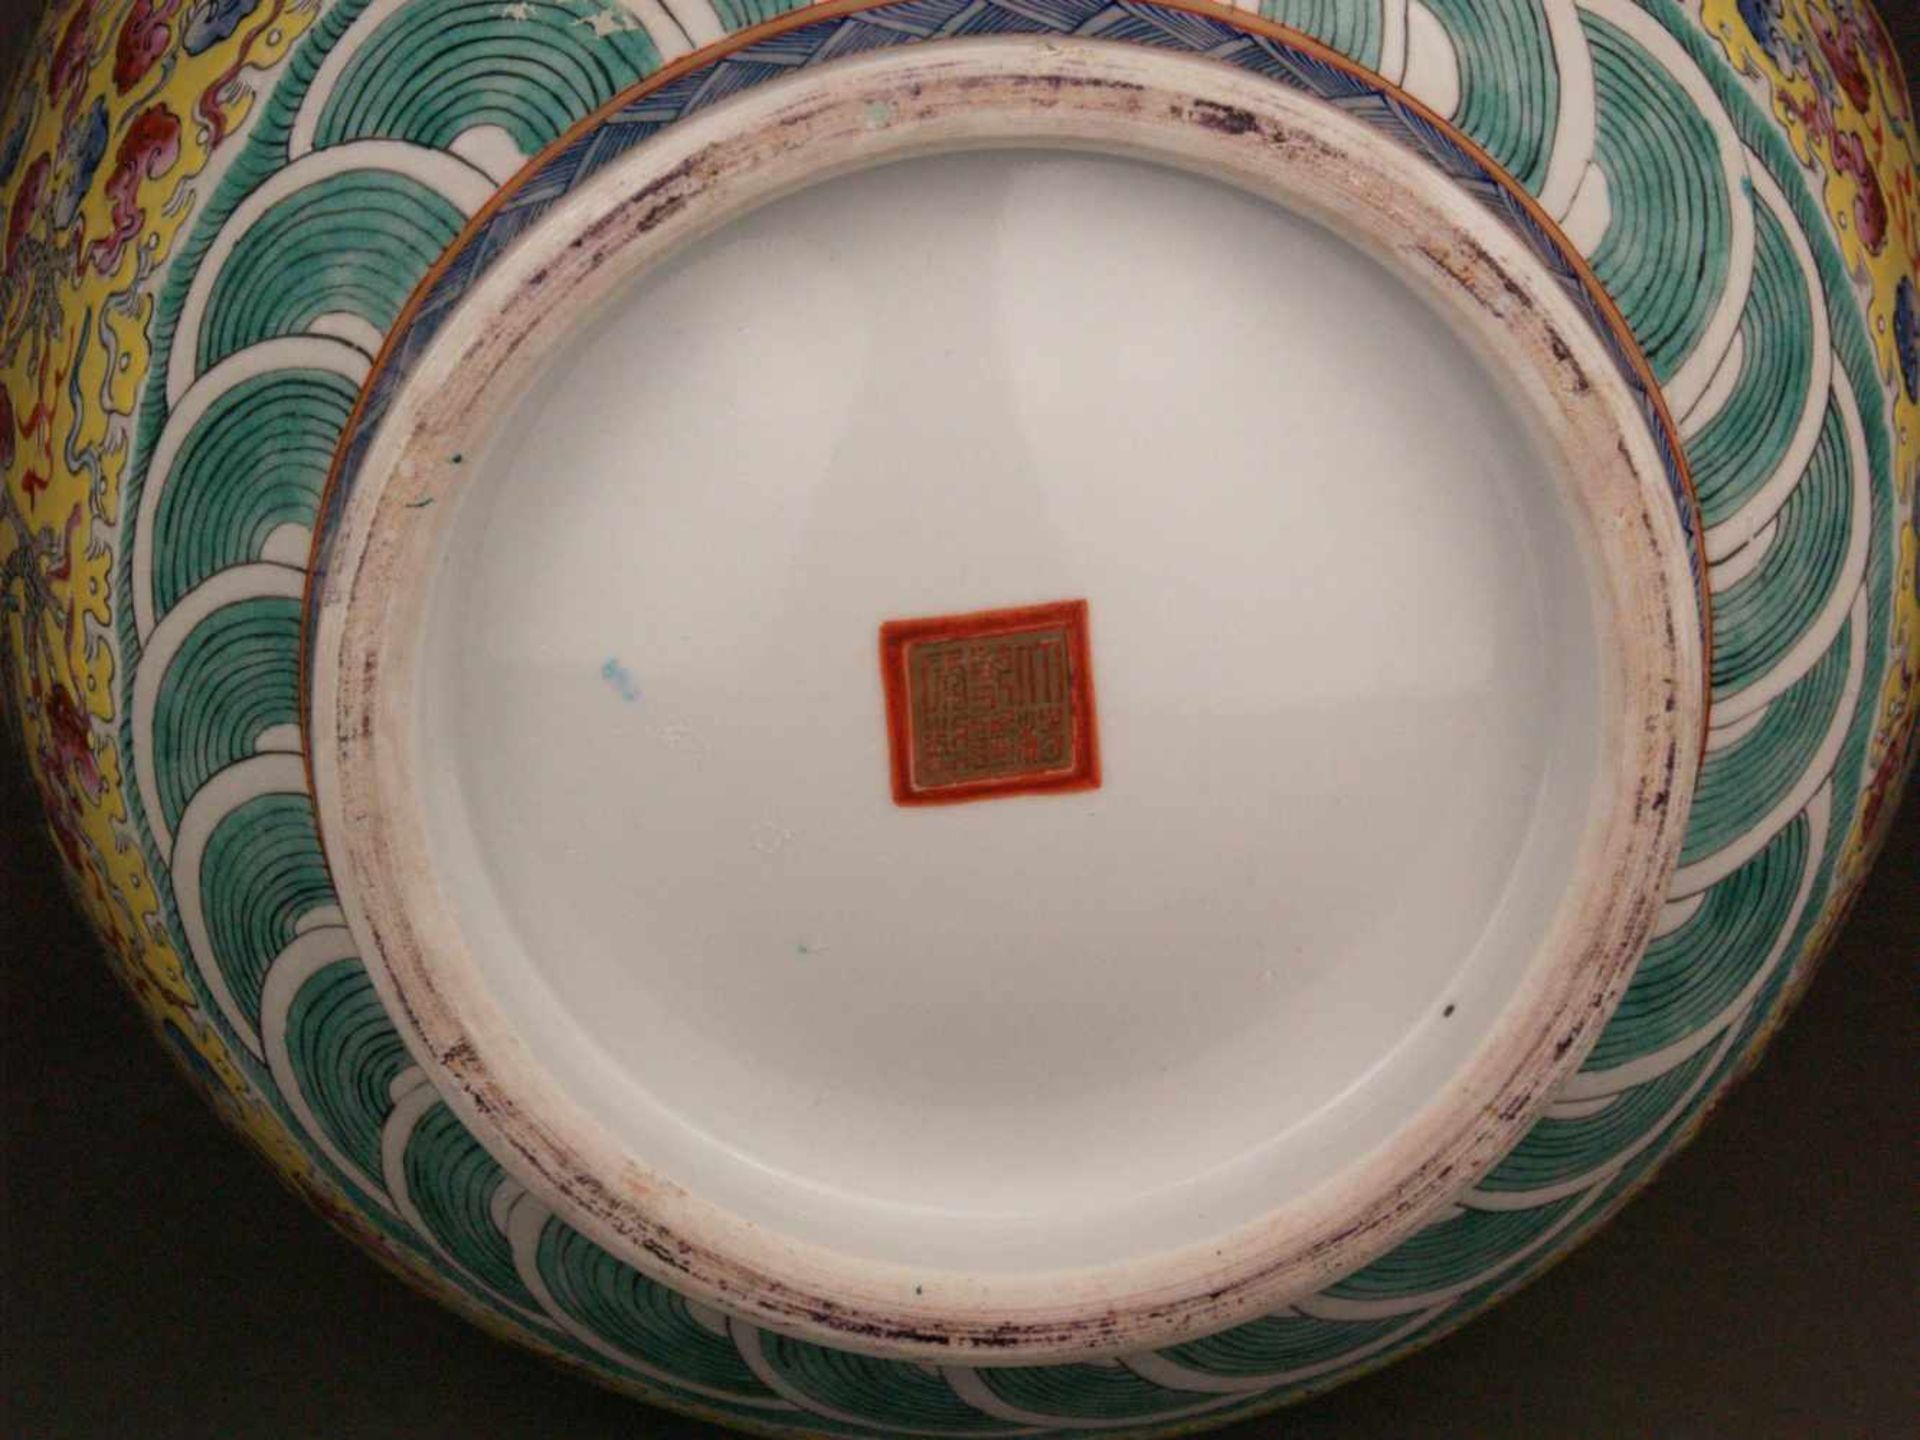 Paar Bodenvasen - China 20.Jh.,Tian qiu ping-Typus, üppiger Dekor in polychromen Emailfarben, auf - Bild 14 aus 15